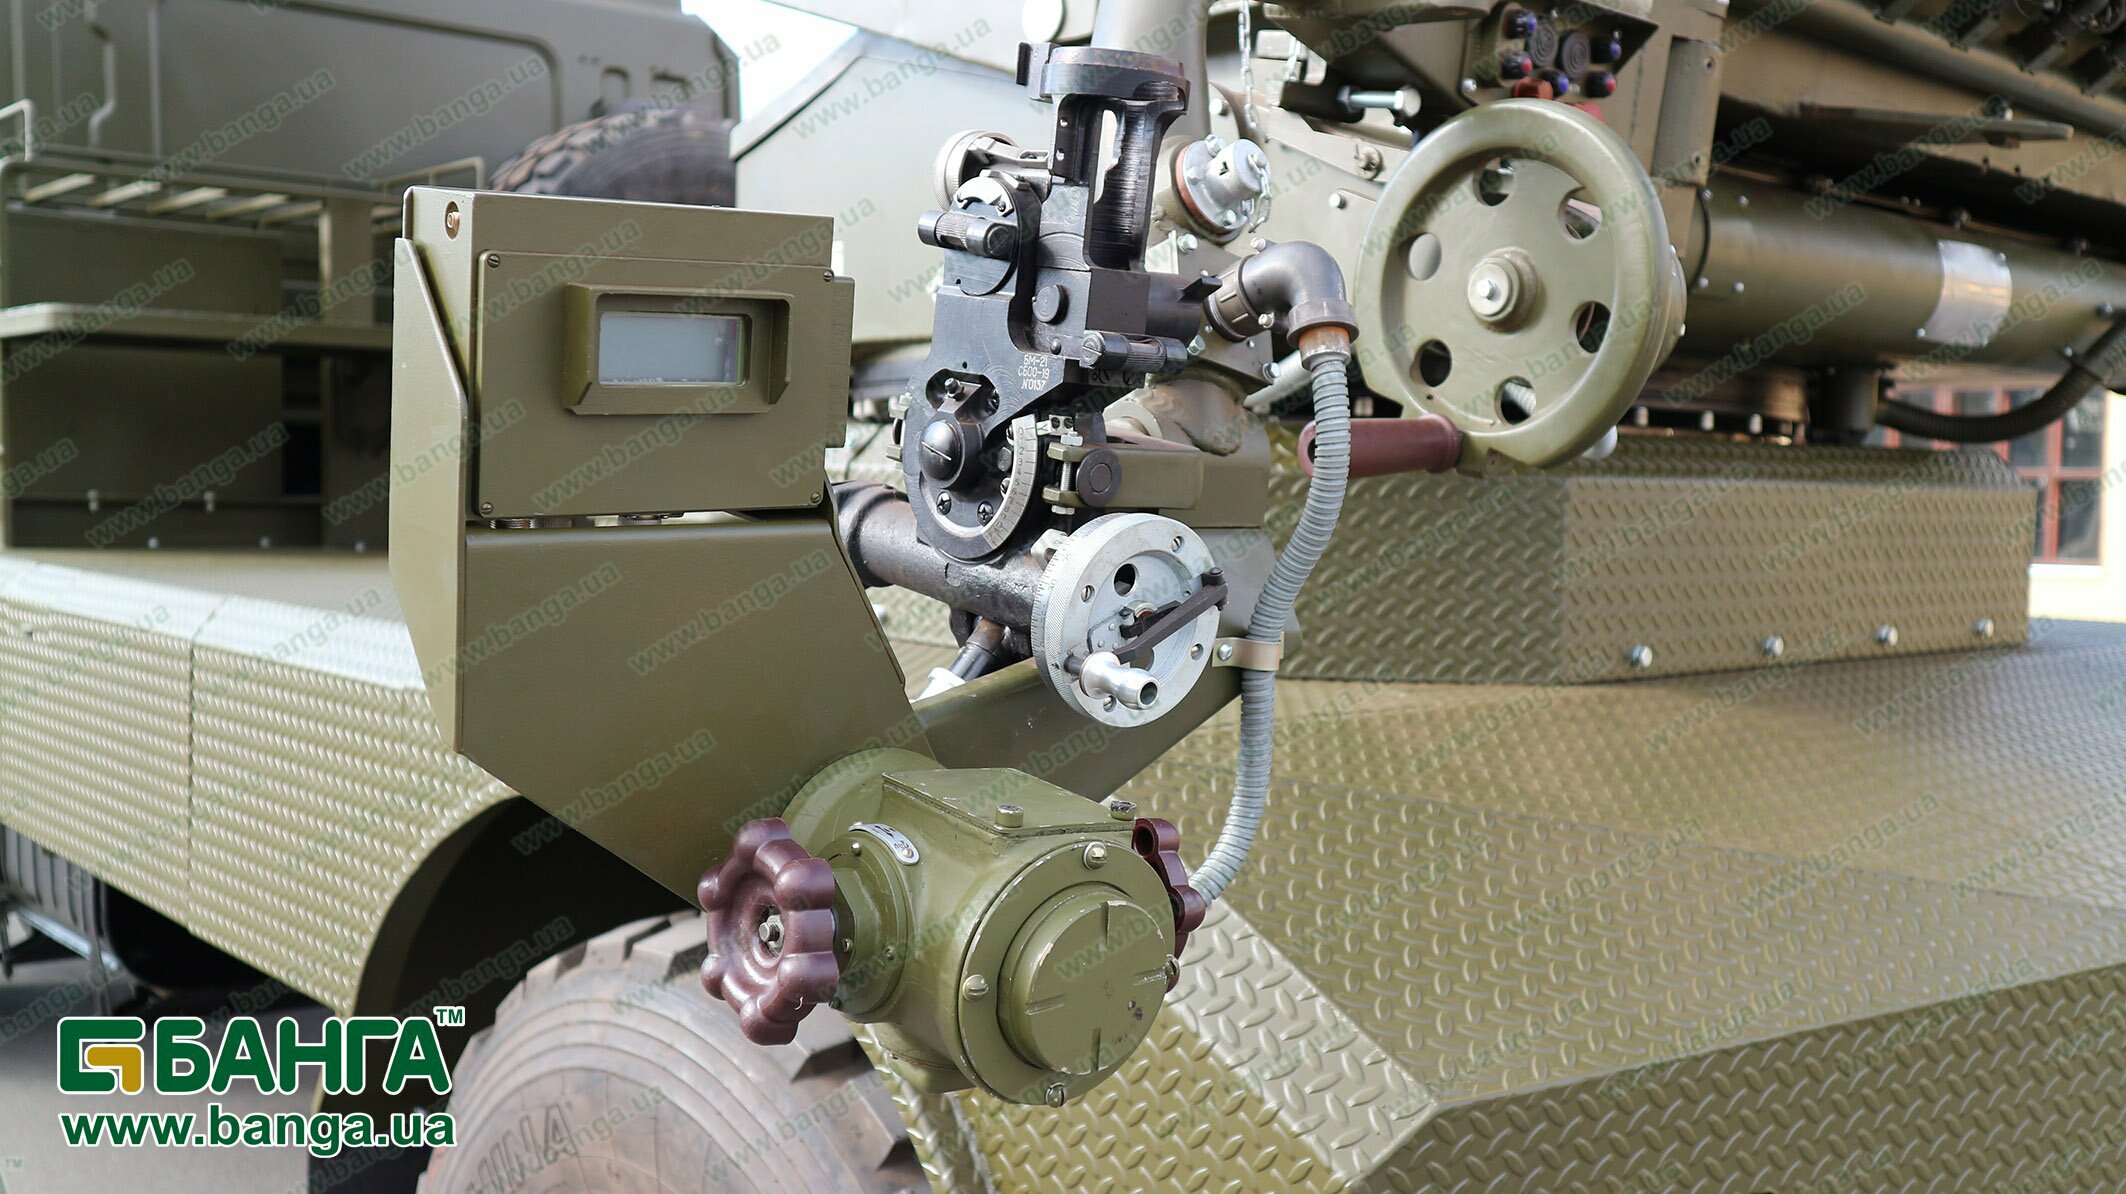 модифікована бойова машина на базі КрАЗу-5401НЕ - БМ-21 УМ «Берест» 